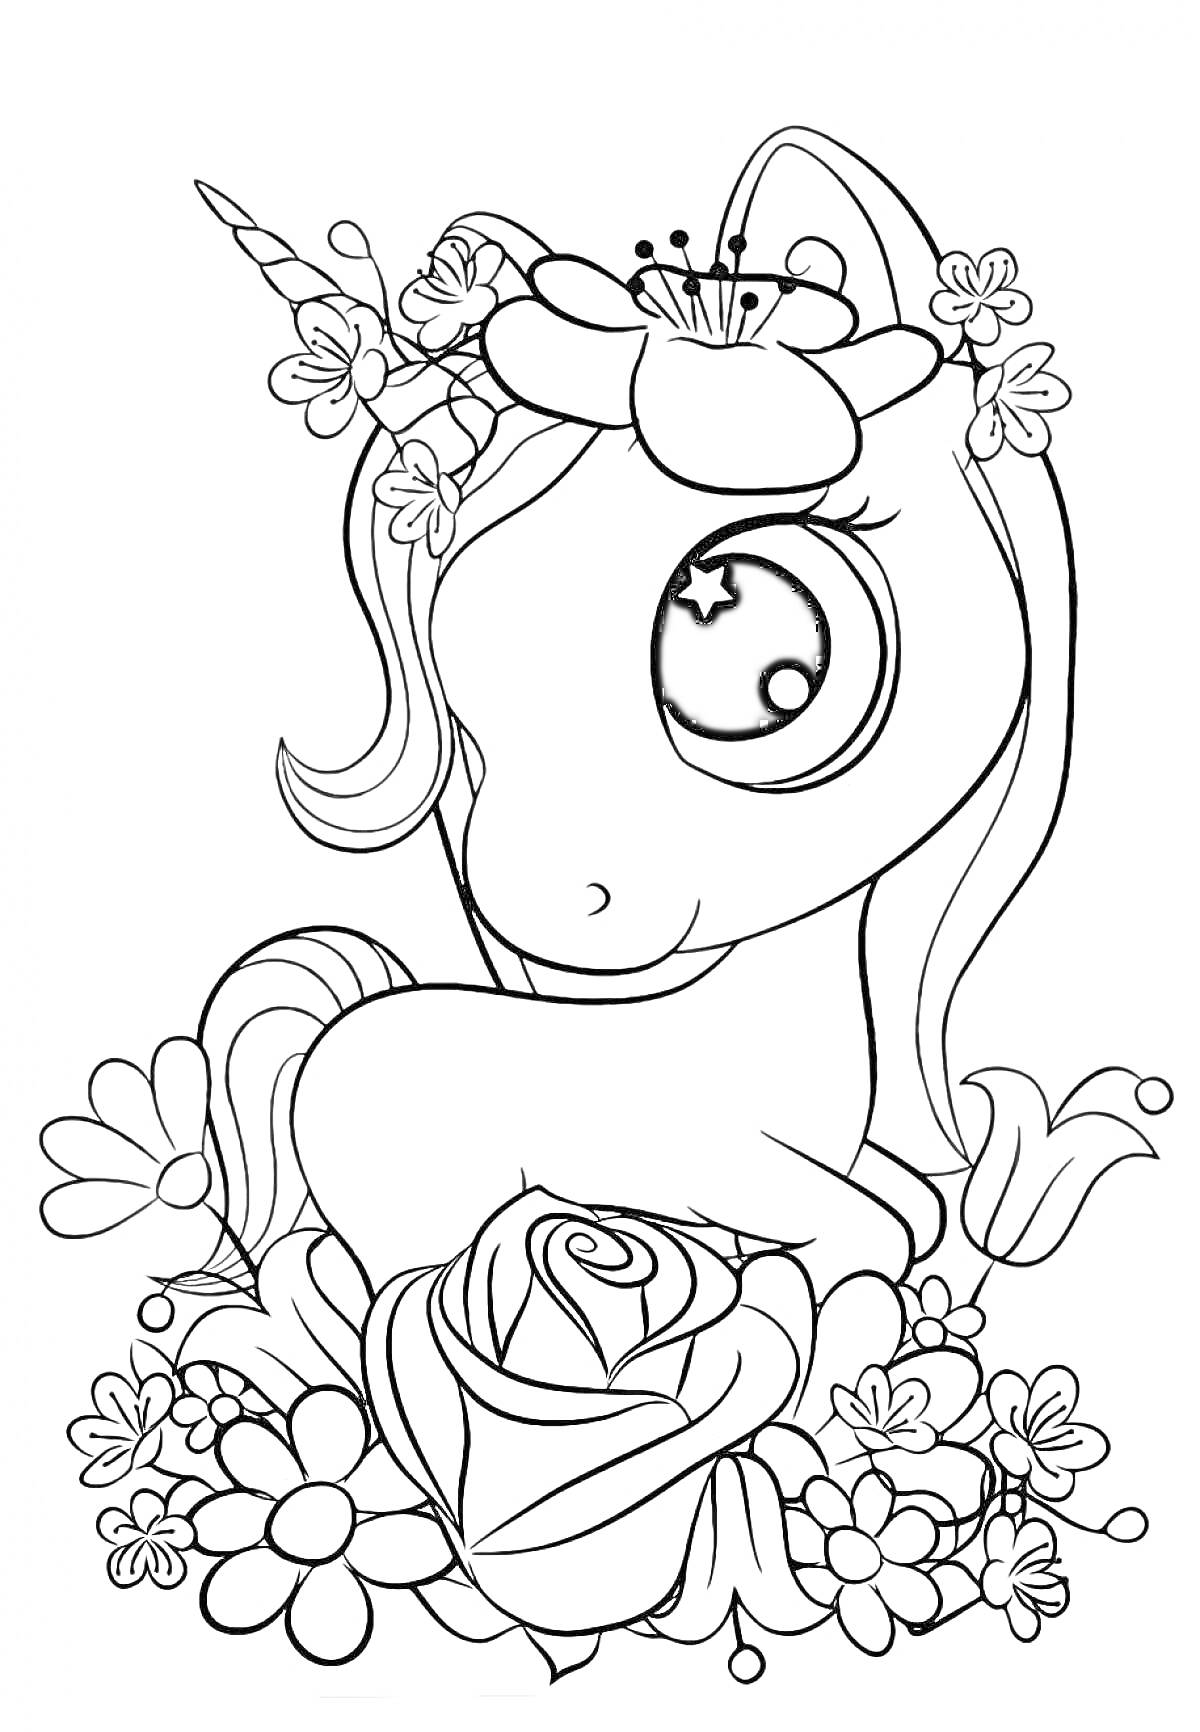 Раскраска Единорог в цветах, окружённый цветами с крупной розой